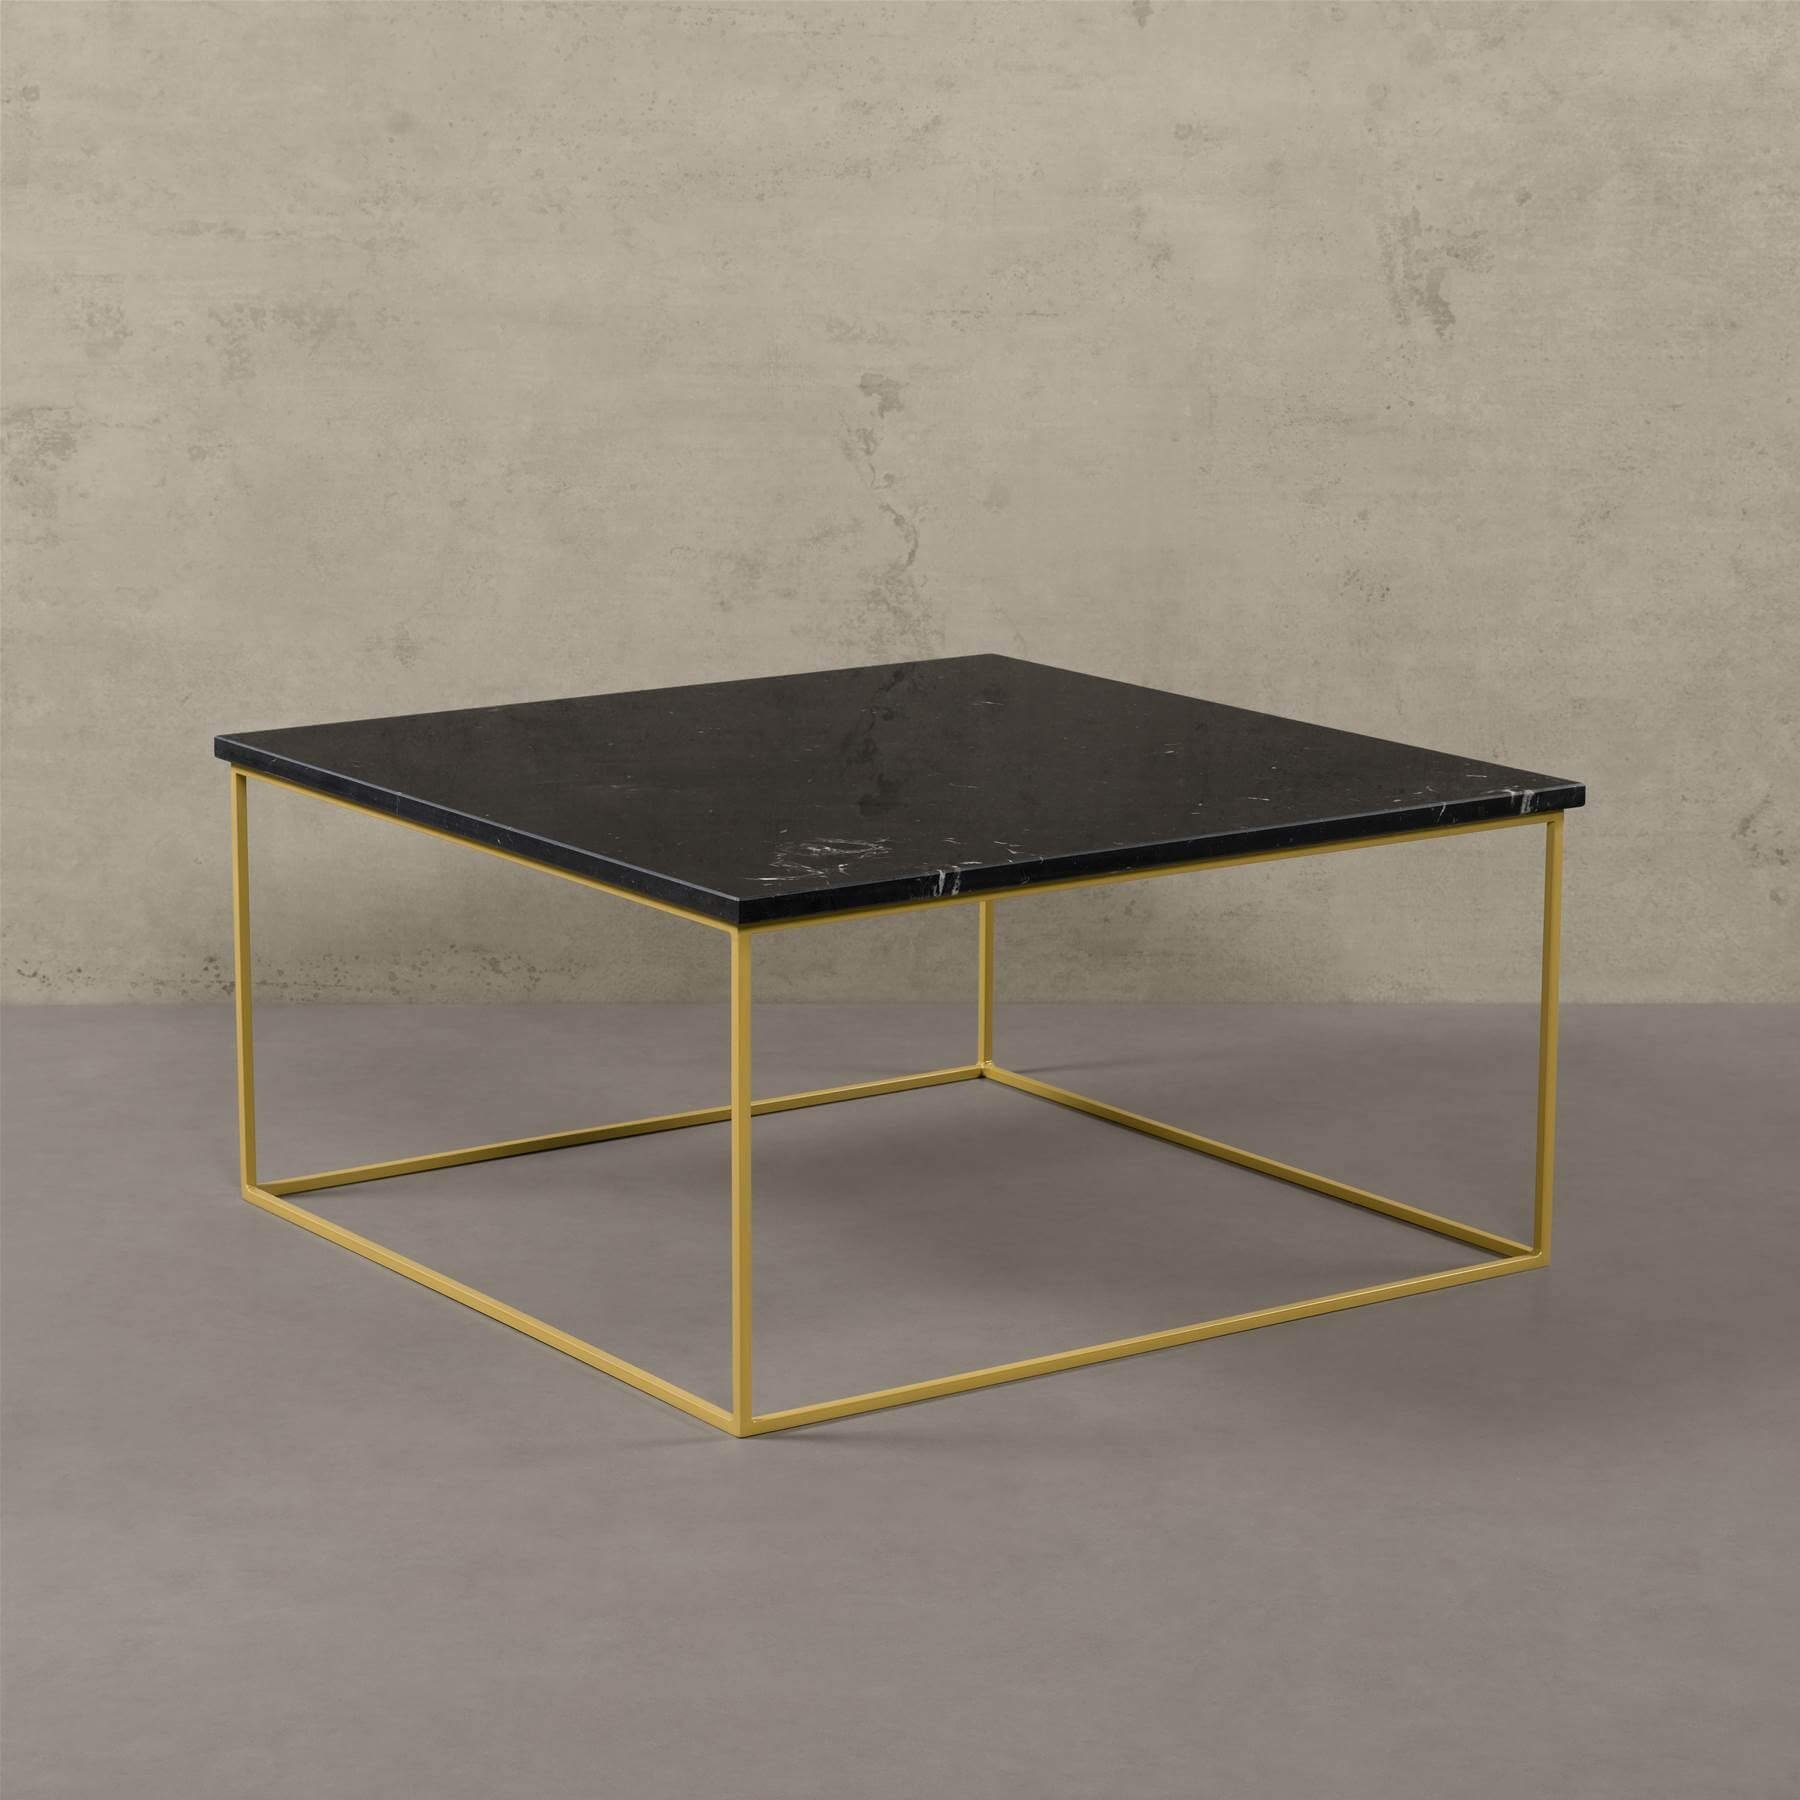 MAGNA Atelier Couchtisch AARHUS mit ECHTEM MARMOR, Wohnzimmer Tisch eckig,  schwarz gold Metallgestell, 80x80x40cm